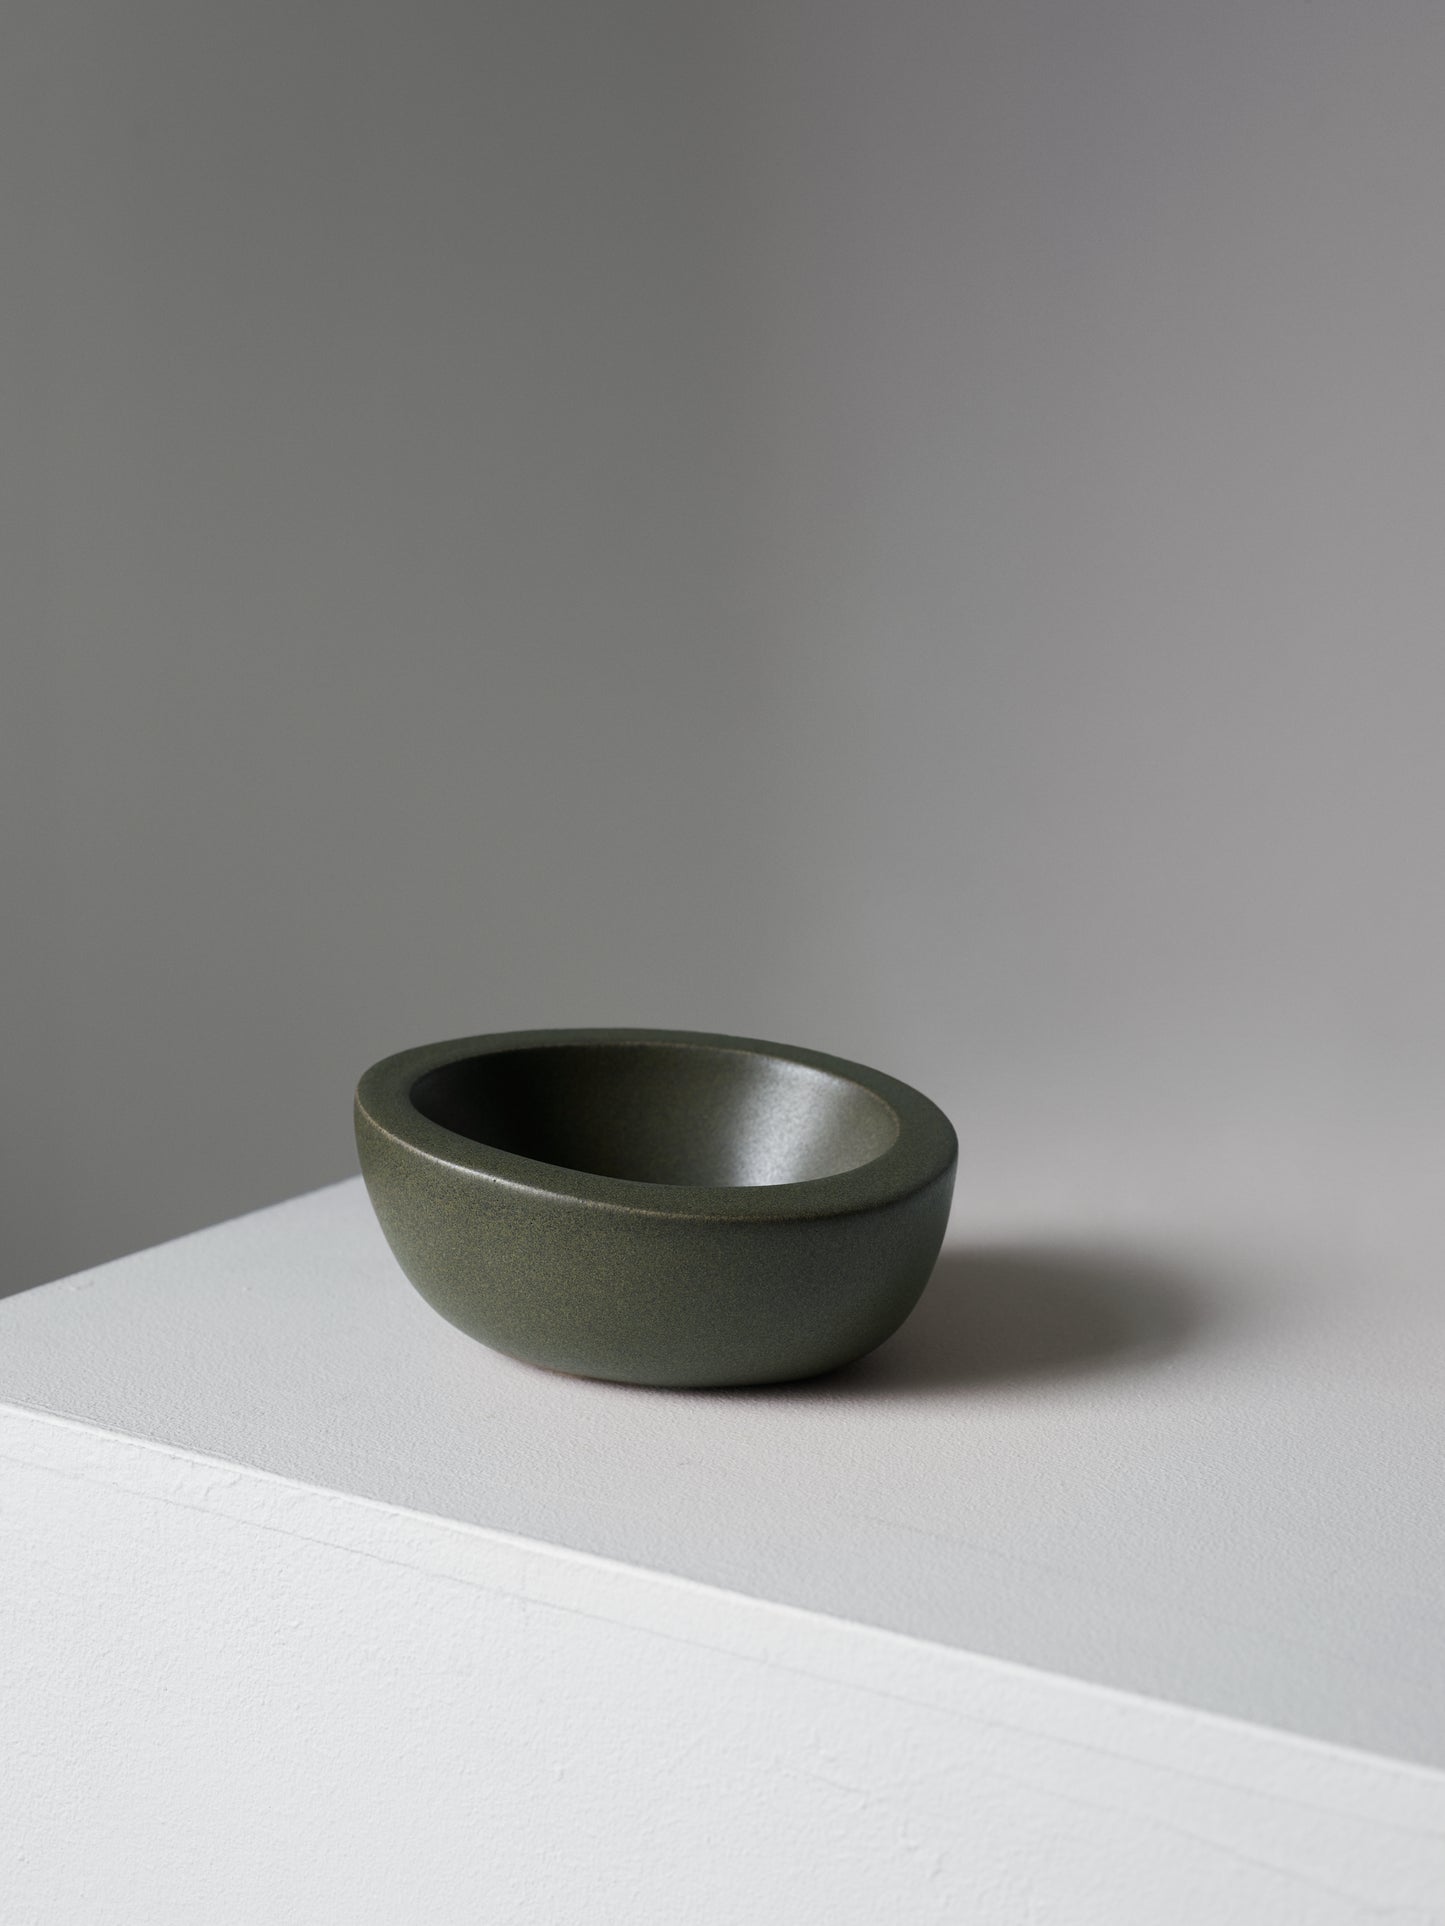 Fredrik Karlsson x Mimmi Blomqvist ceramics #10, 2020